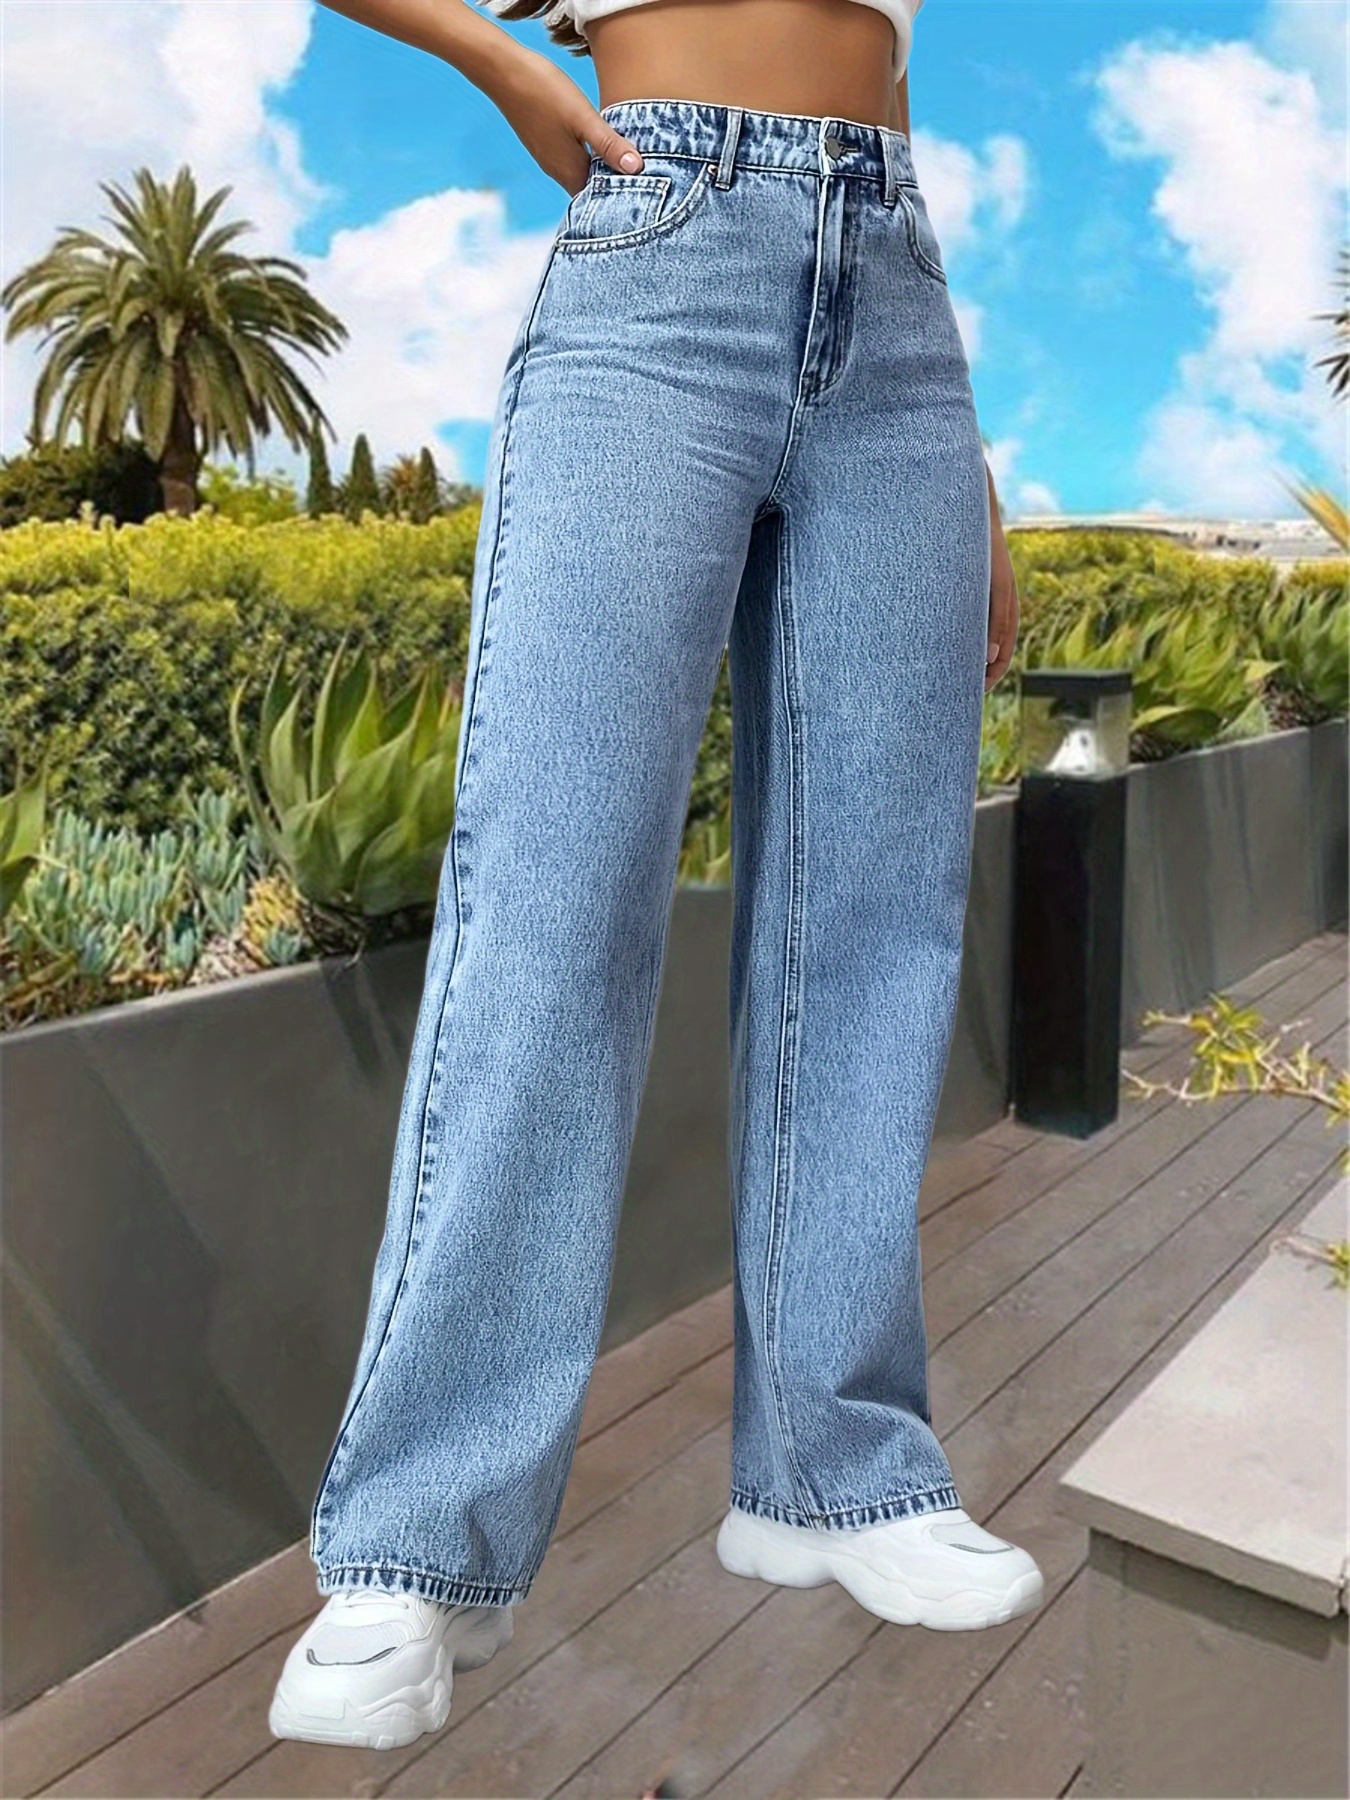 Jeans de moda para mujer Elástico Patrón de mariposa Jeans Mujer Pantalones  de mezclilla sueltos Pantalones vaqueros rasgados y tops Pantalon Femme